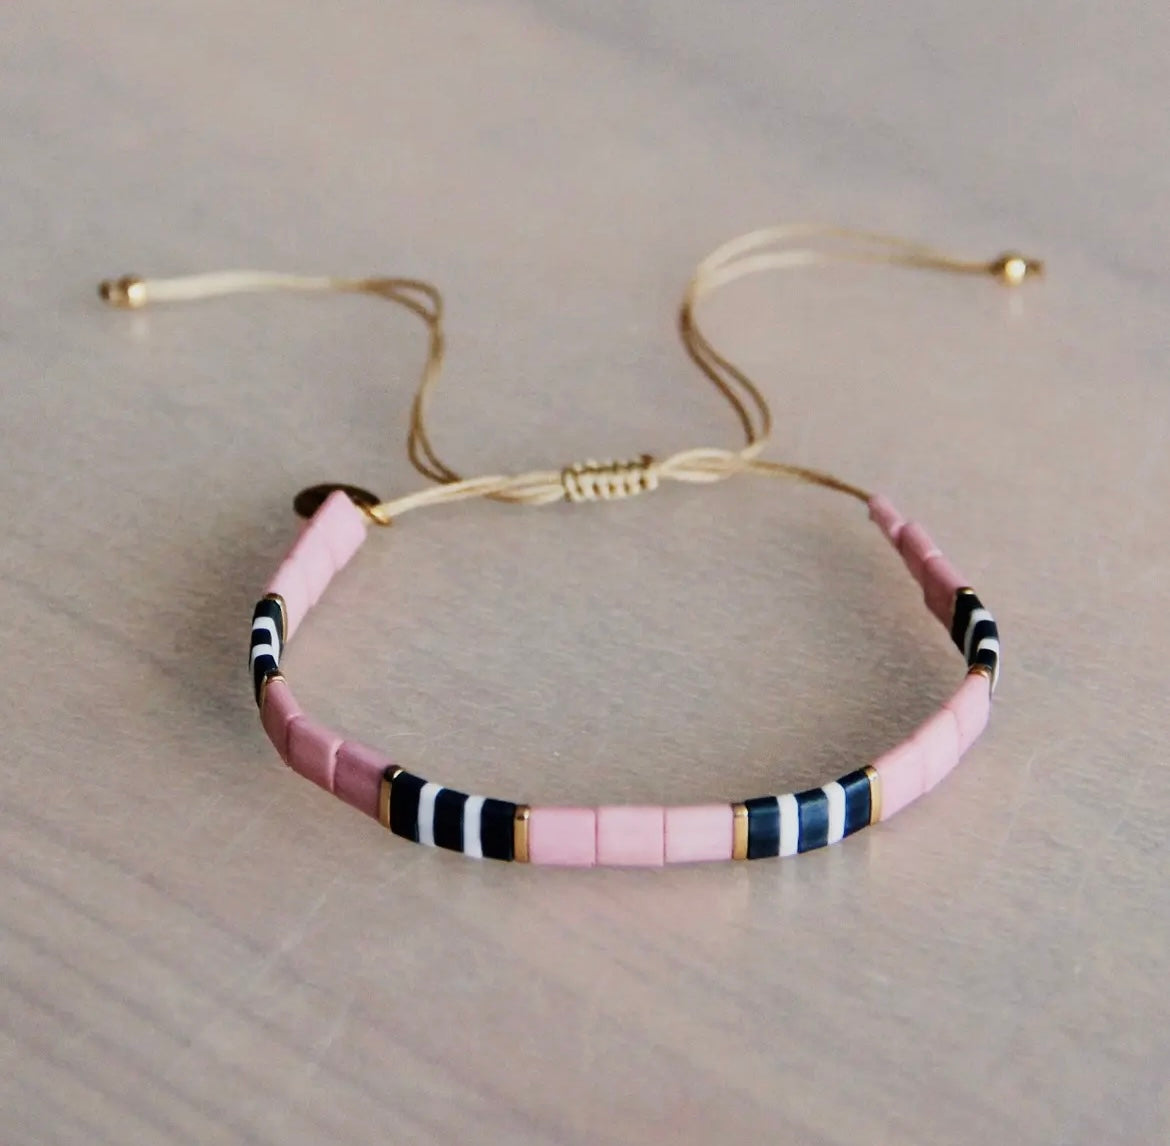 Tilabead-Armband in den knalligen Farben lila, grau und weiß mit vergoldeten Perlen. Mit Schiebeknöpfe individuell in der Größe verstellbar. 